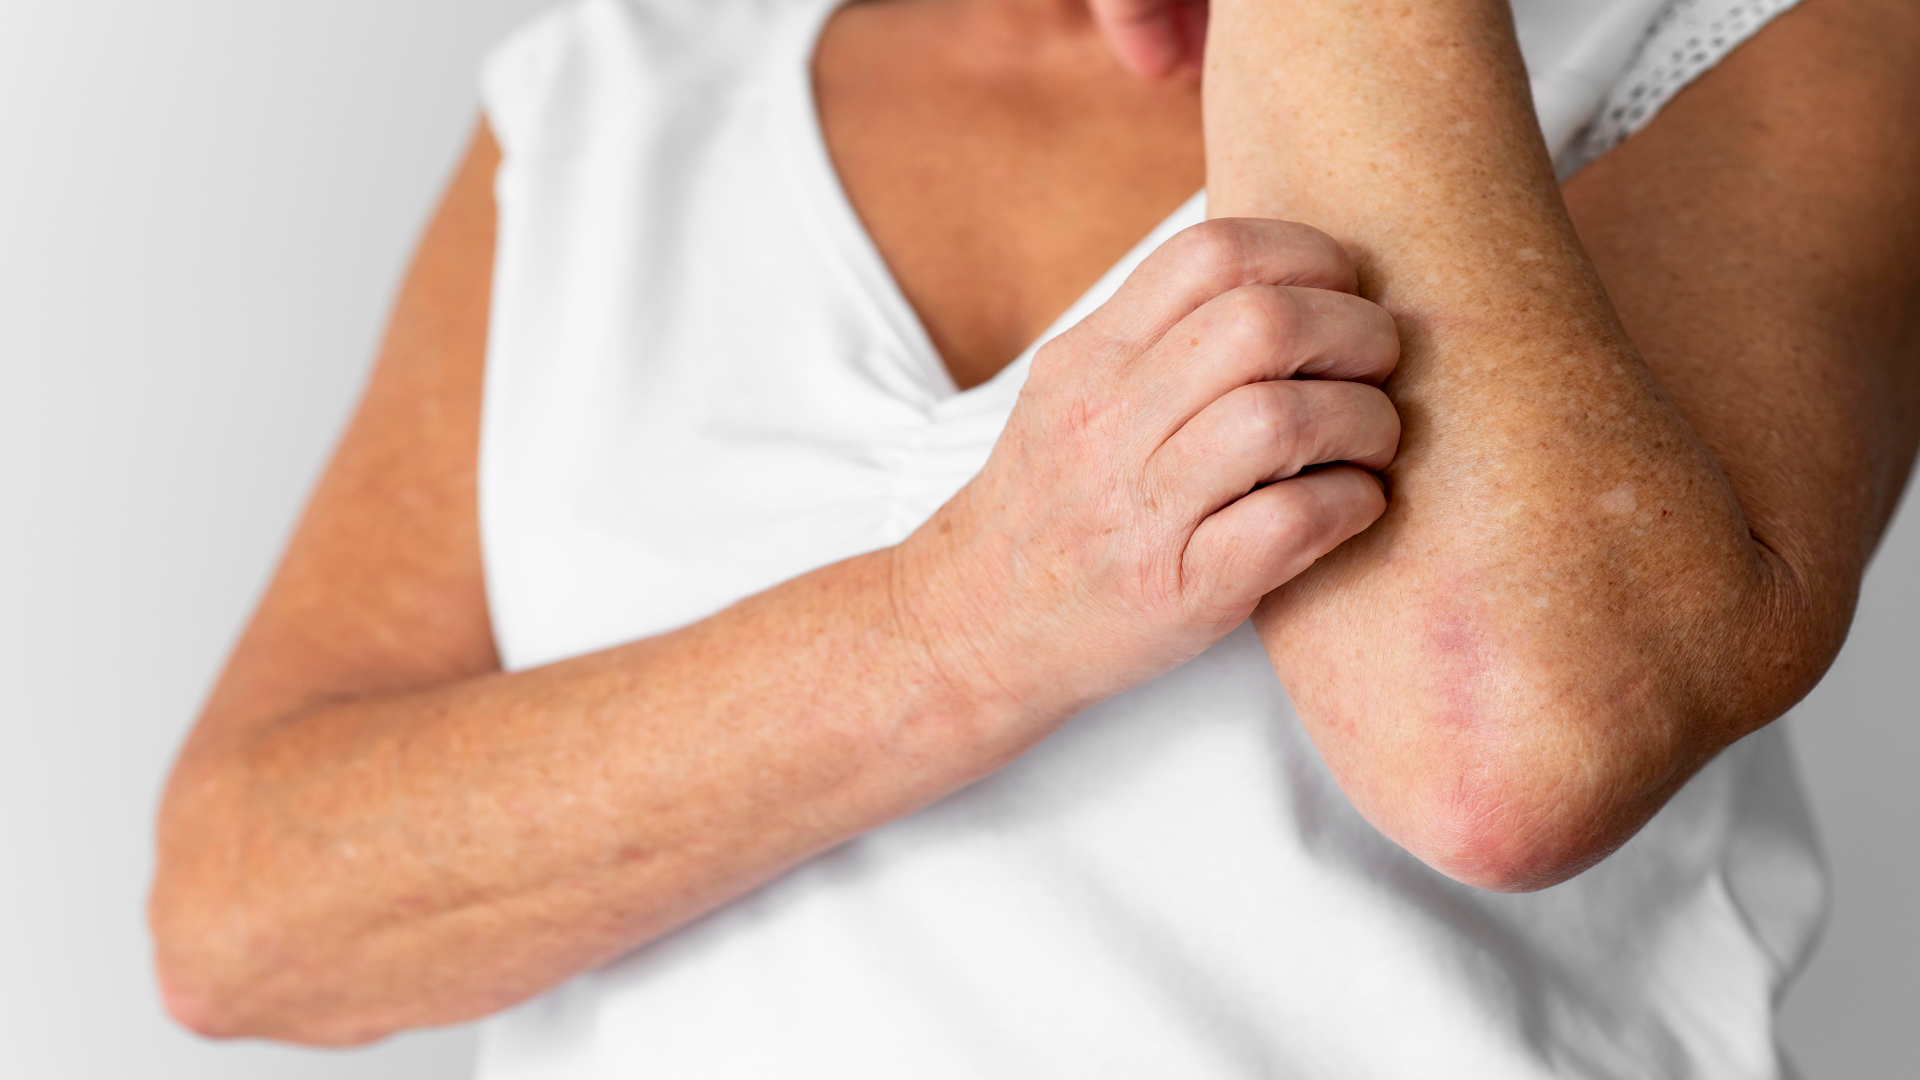 Foto de capa do artigo "Dermatite de Contato: tem cura? Veja o que é e como tratar"